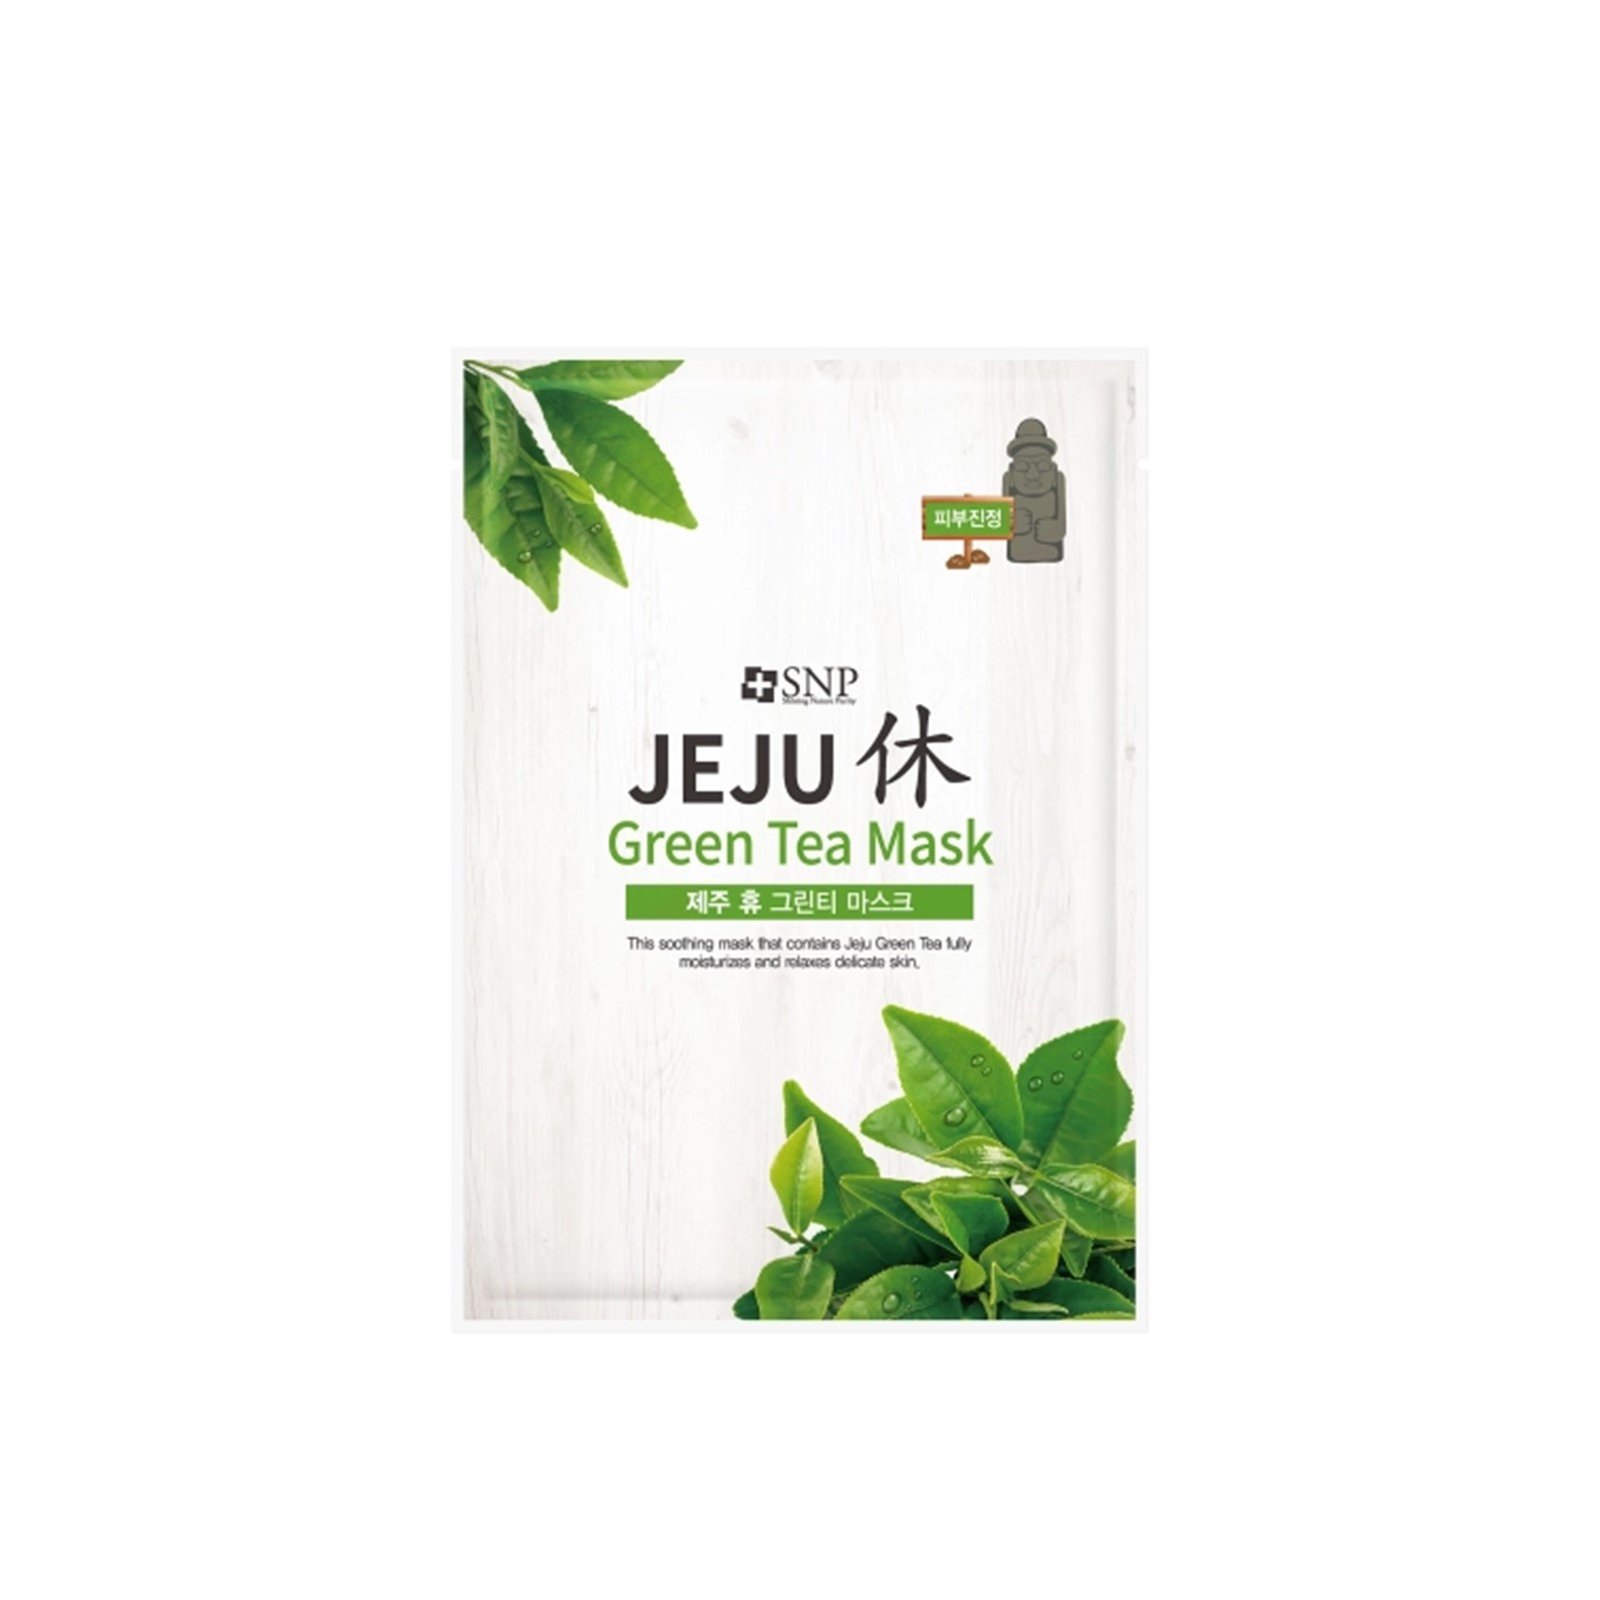 SNP Jeju Rest Green Tea Sheet Mask 22ml